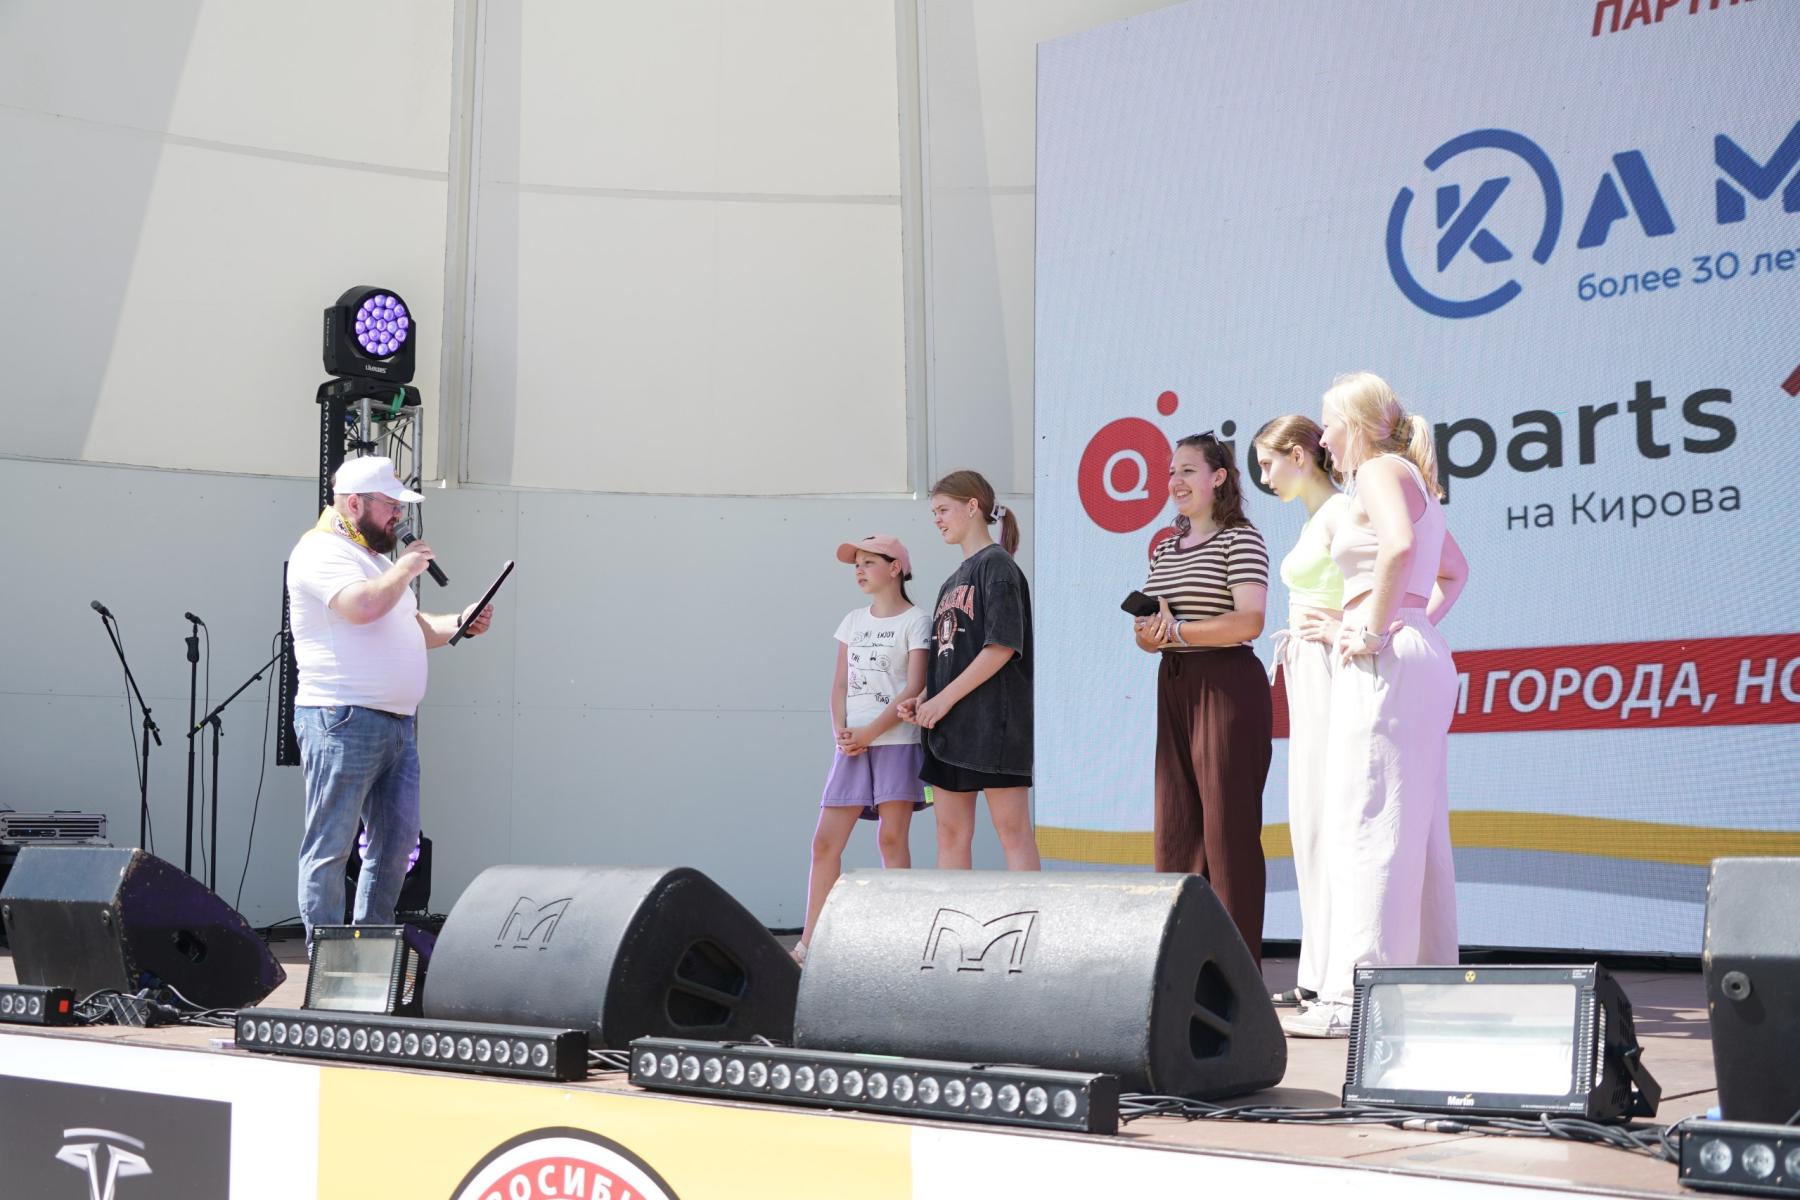 Фото Звёзды на сцене и трансформеры в парке: в Новосибирске с размахом завершилось празднование Дня города. Полный фотоотчёт 49